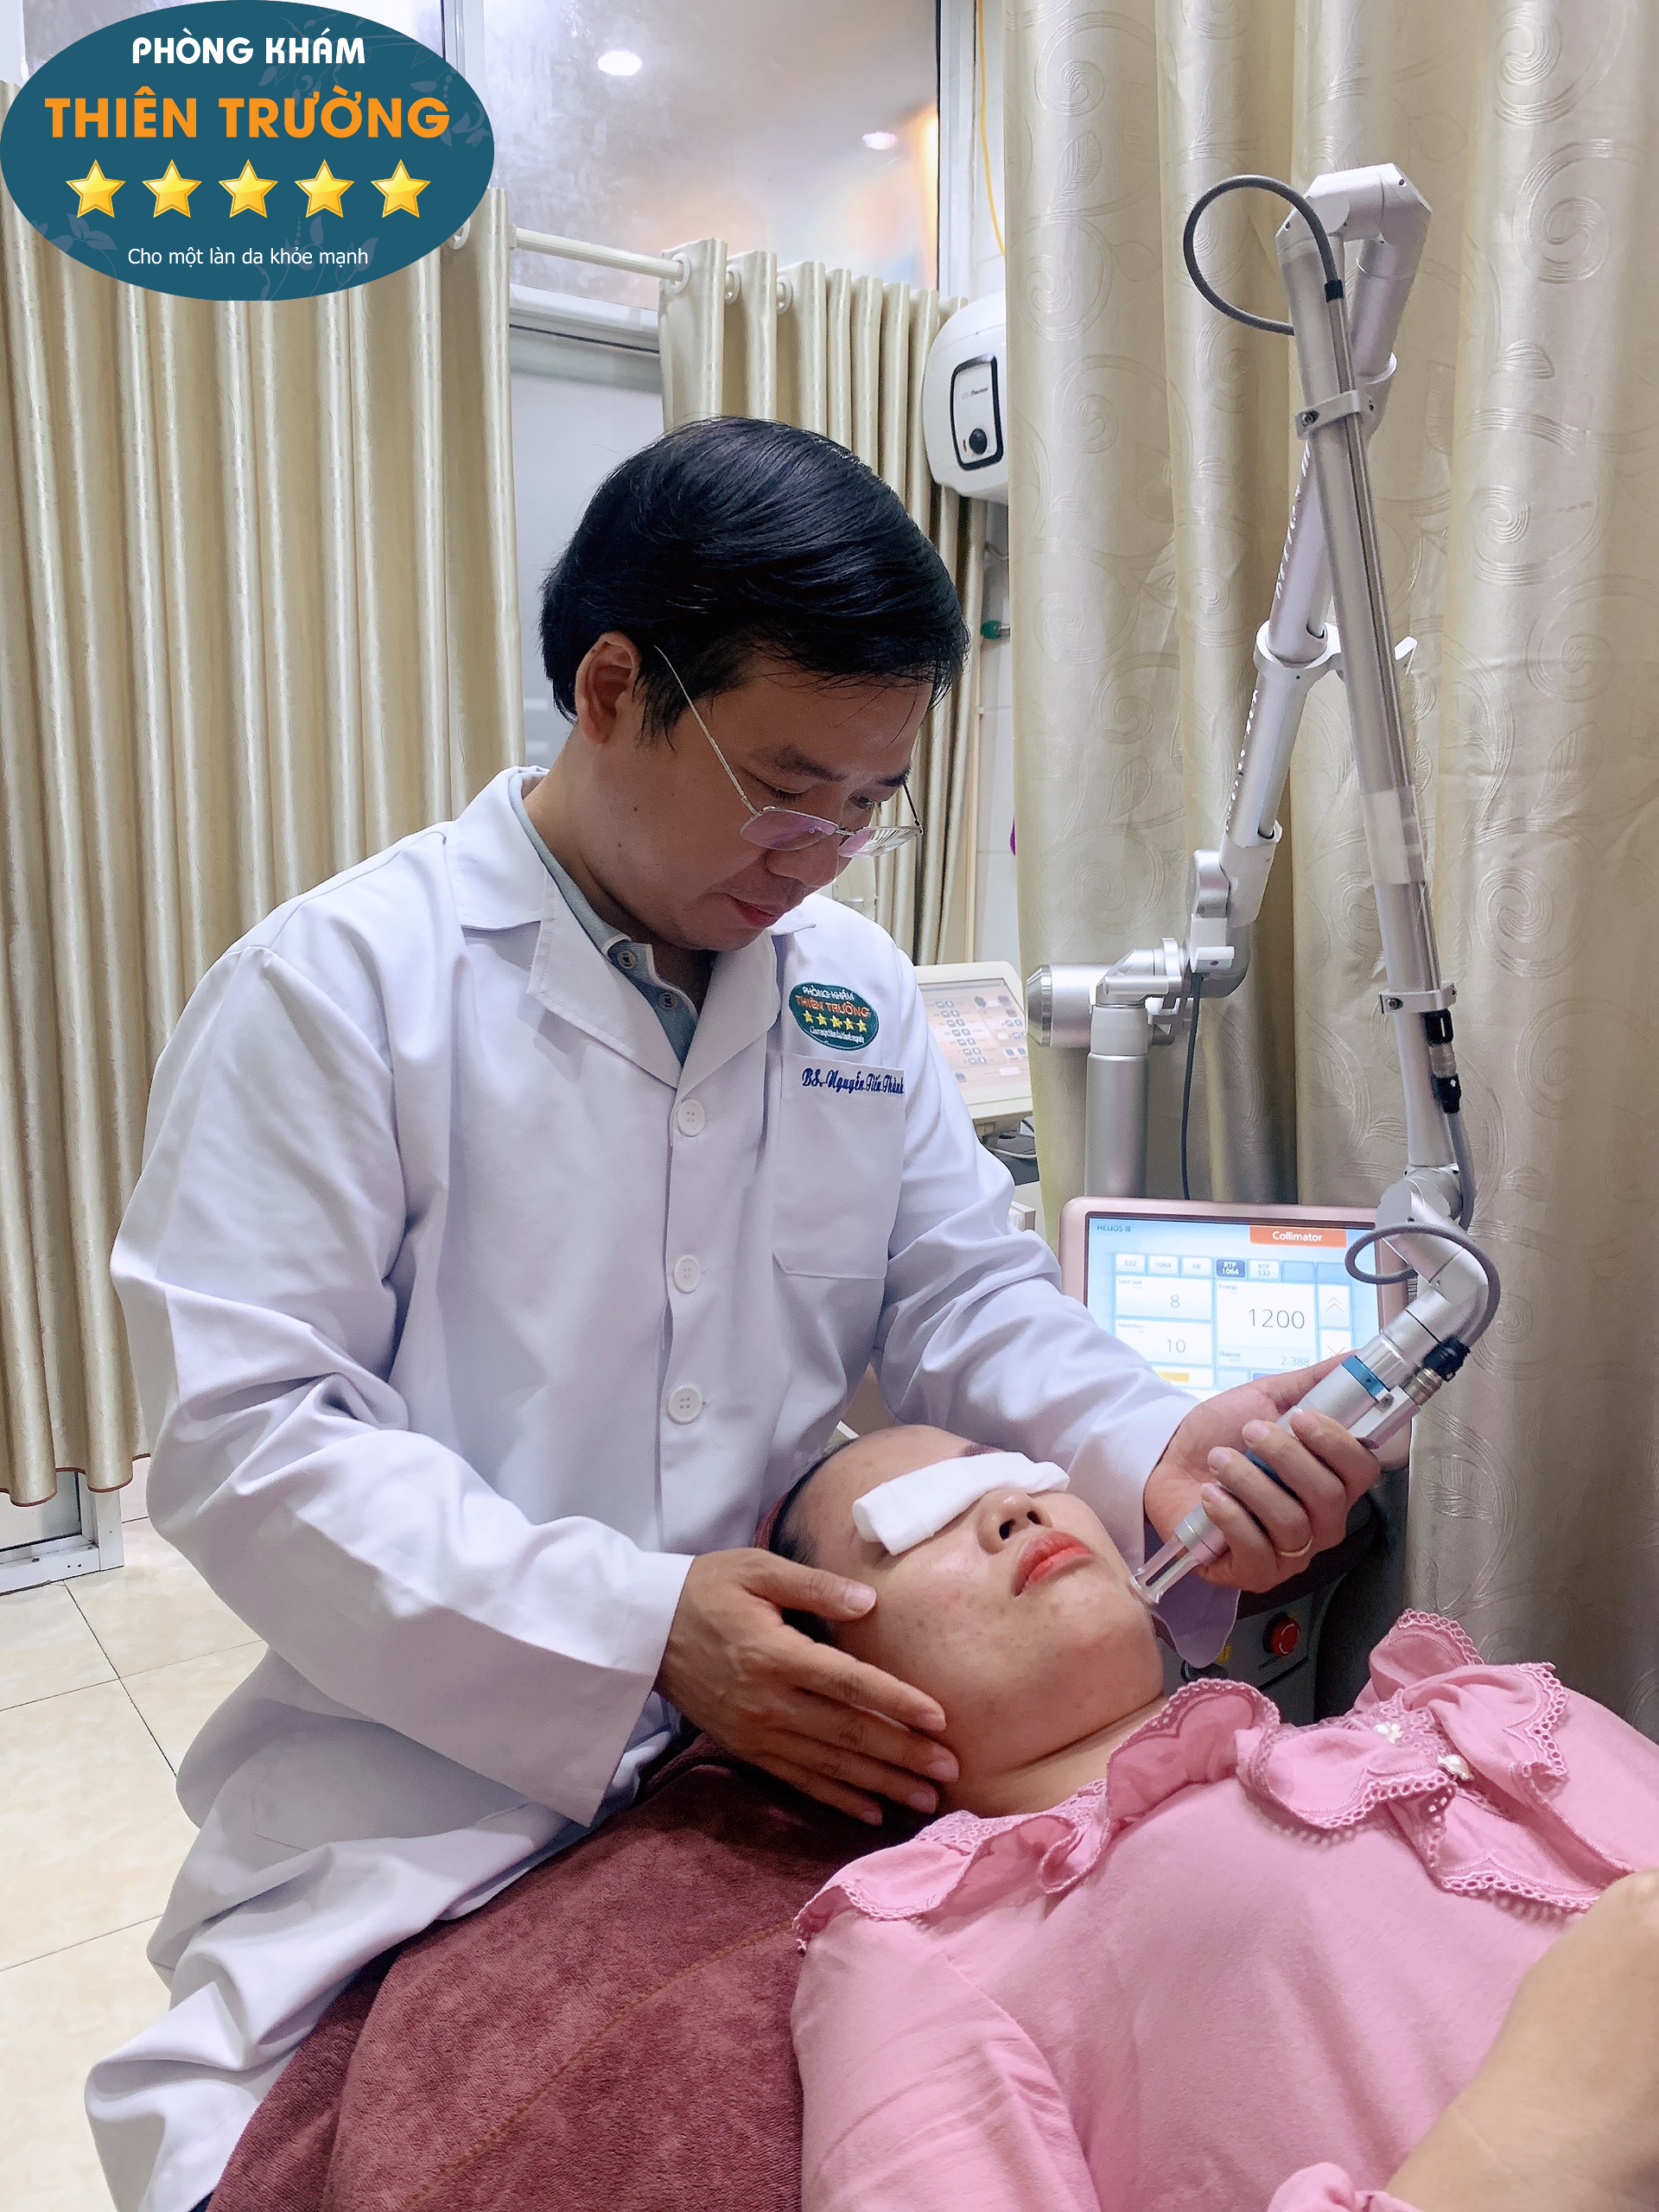 Hình ảnh: Thạc sĩ- Bác sĩ Nguyễn Tiến Thành đang hỗ trợ điều trị mụn cho bệnh nhân.